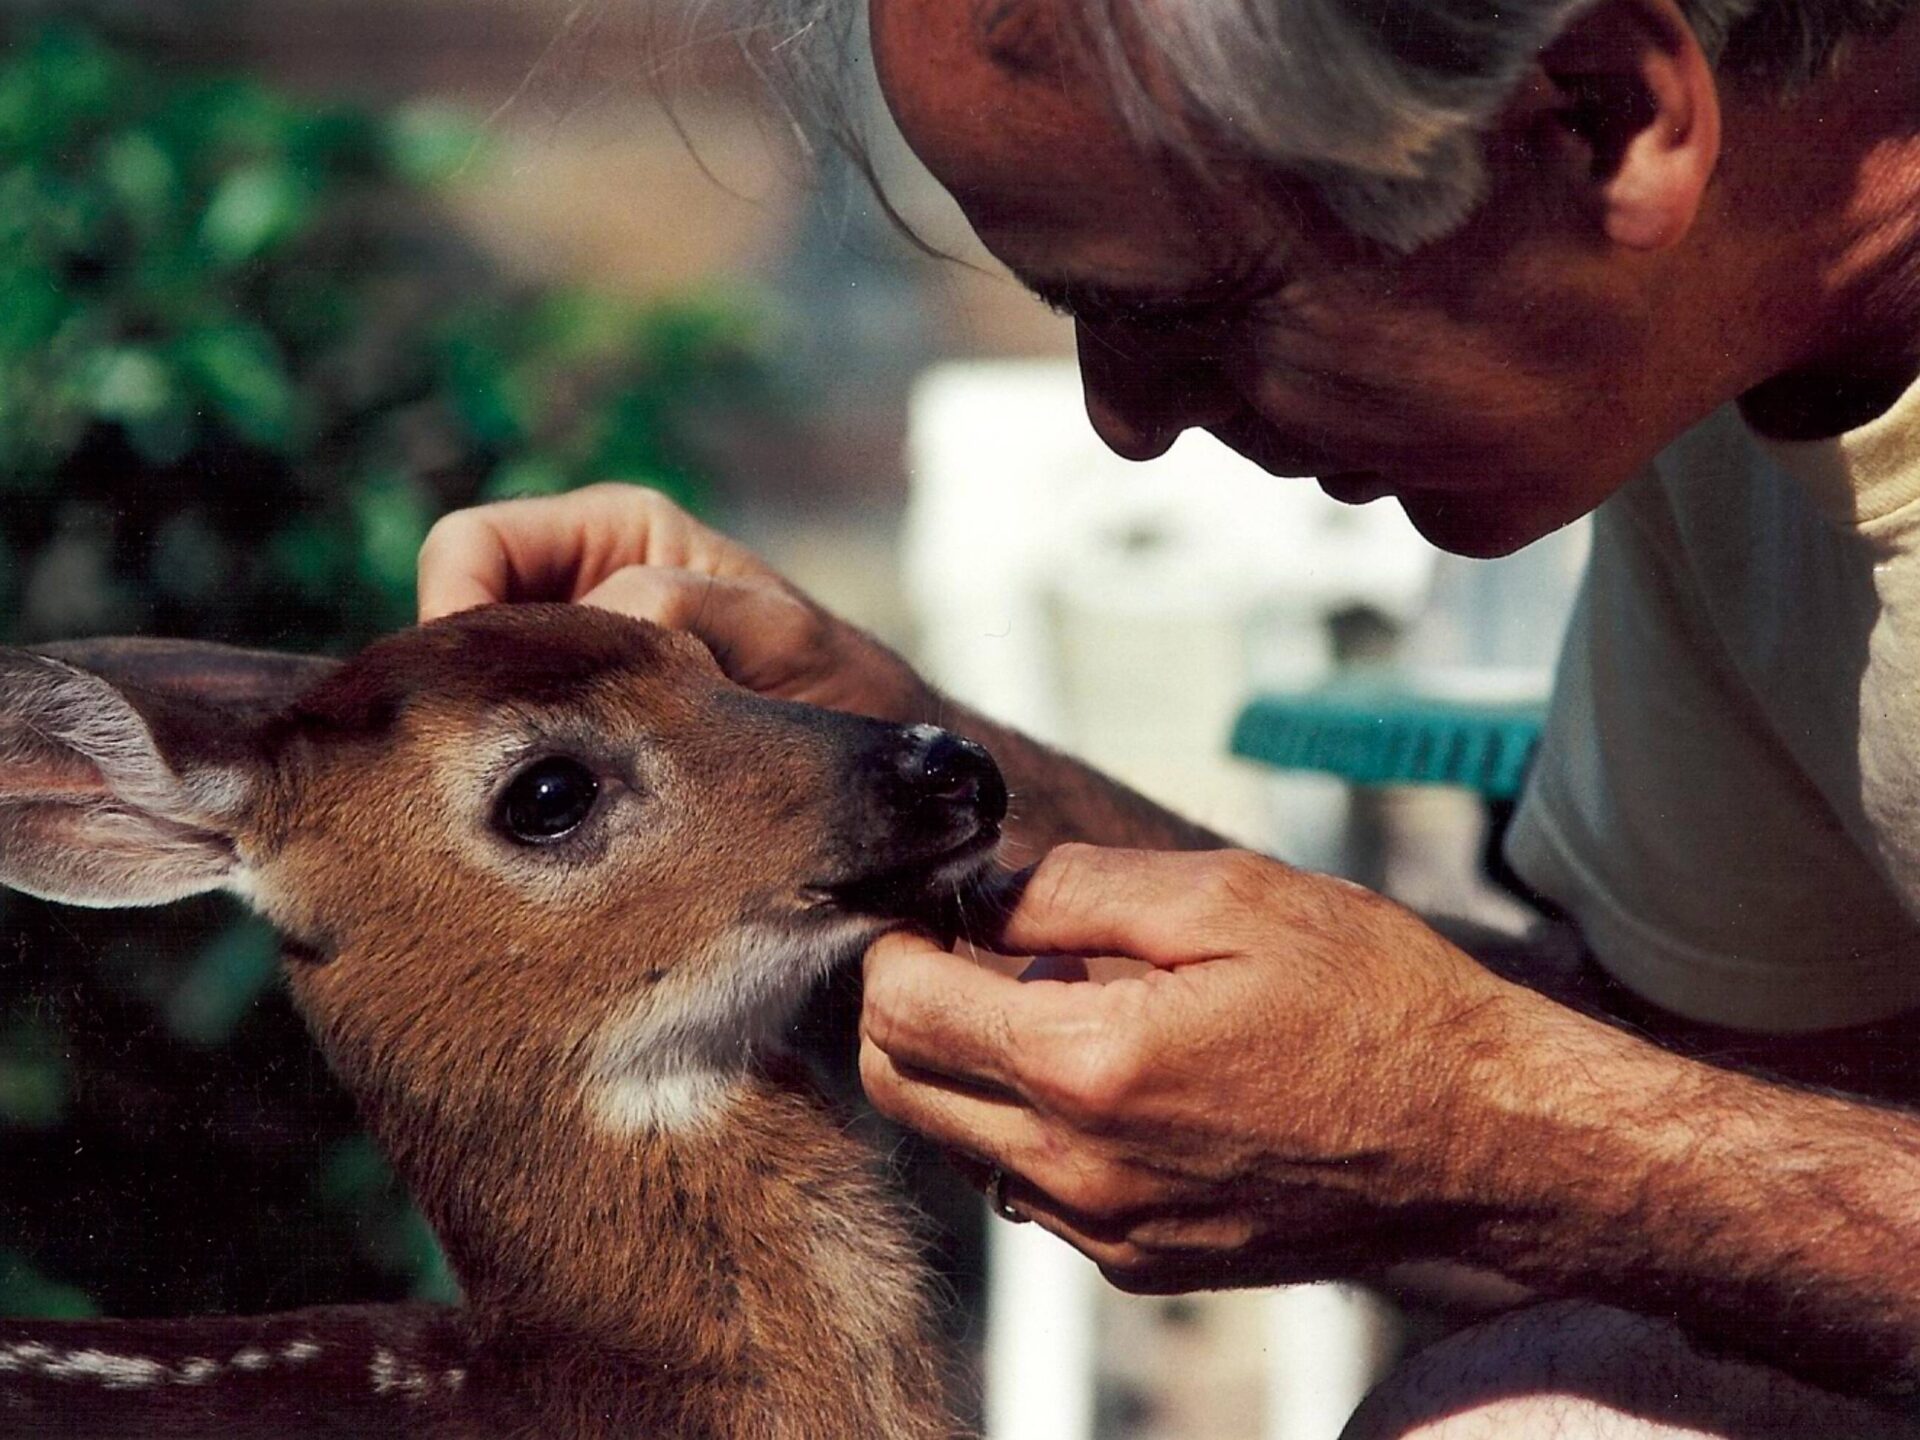 A man petting a deer